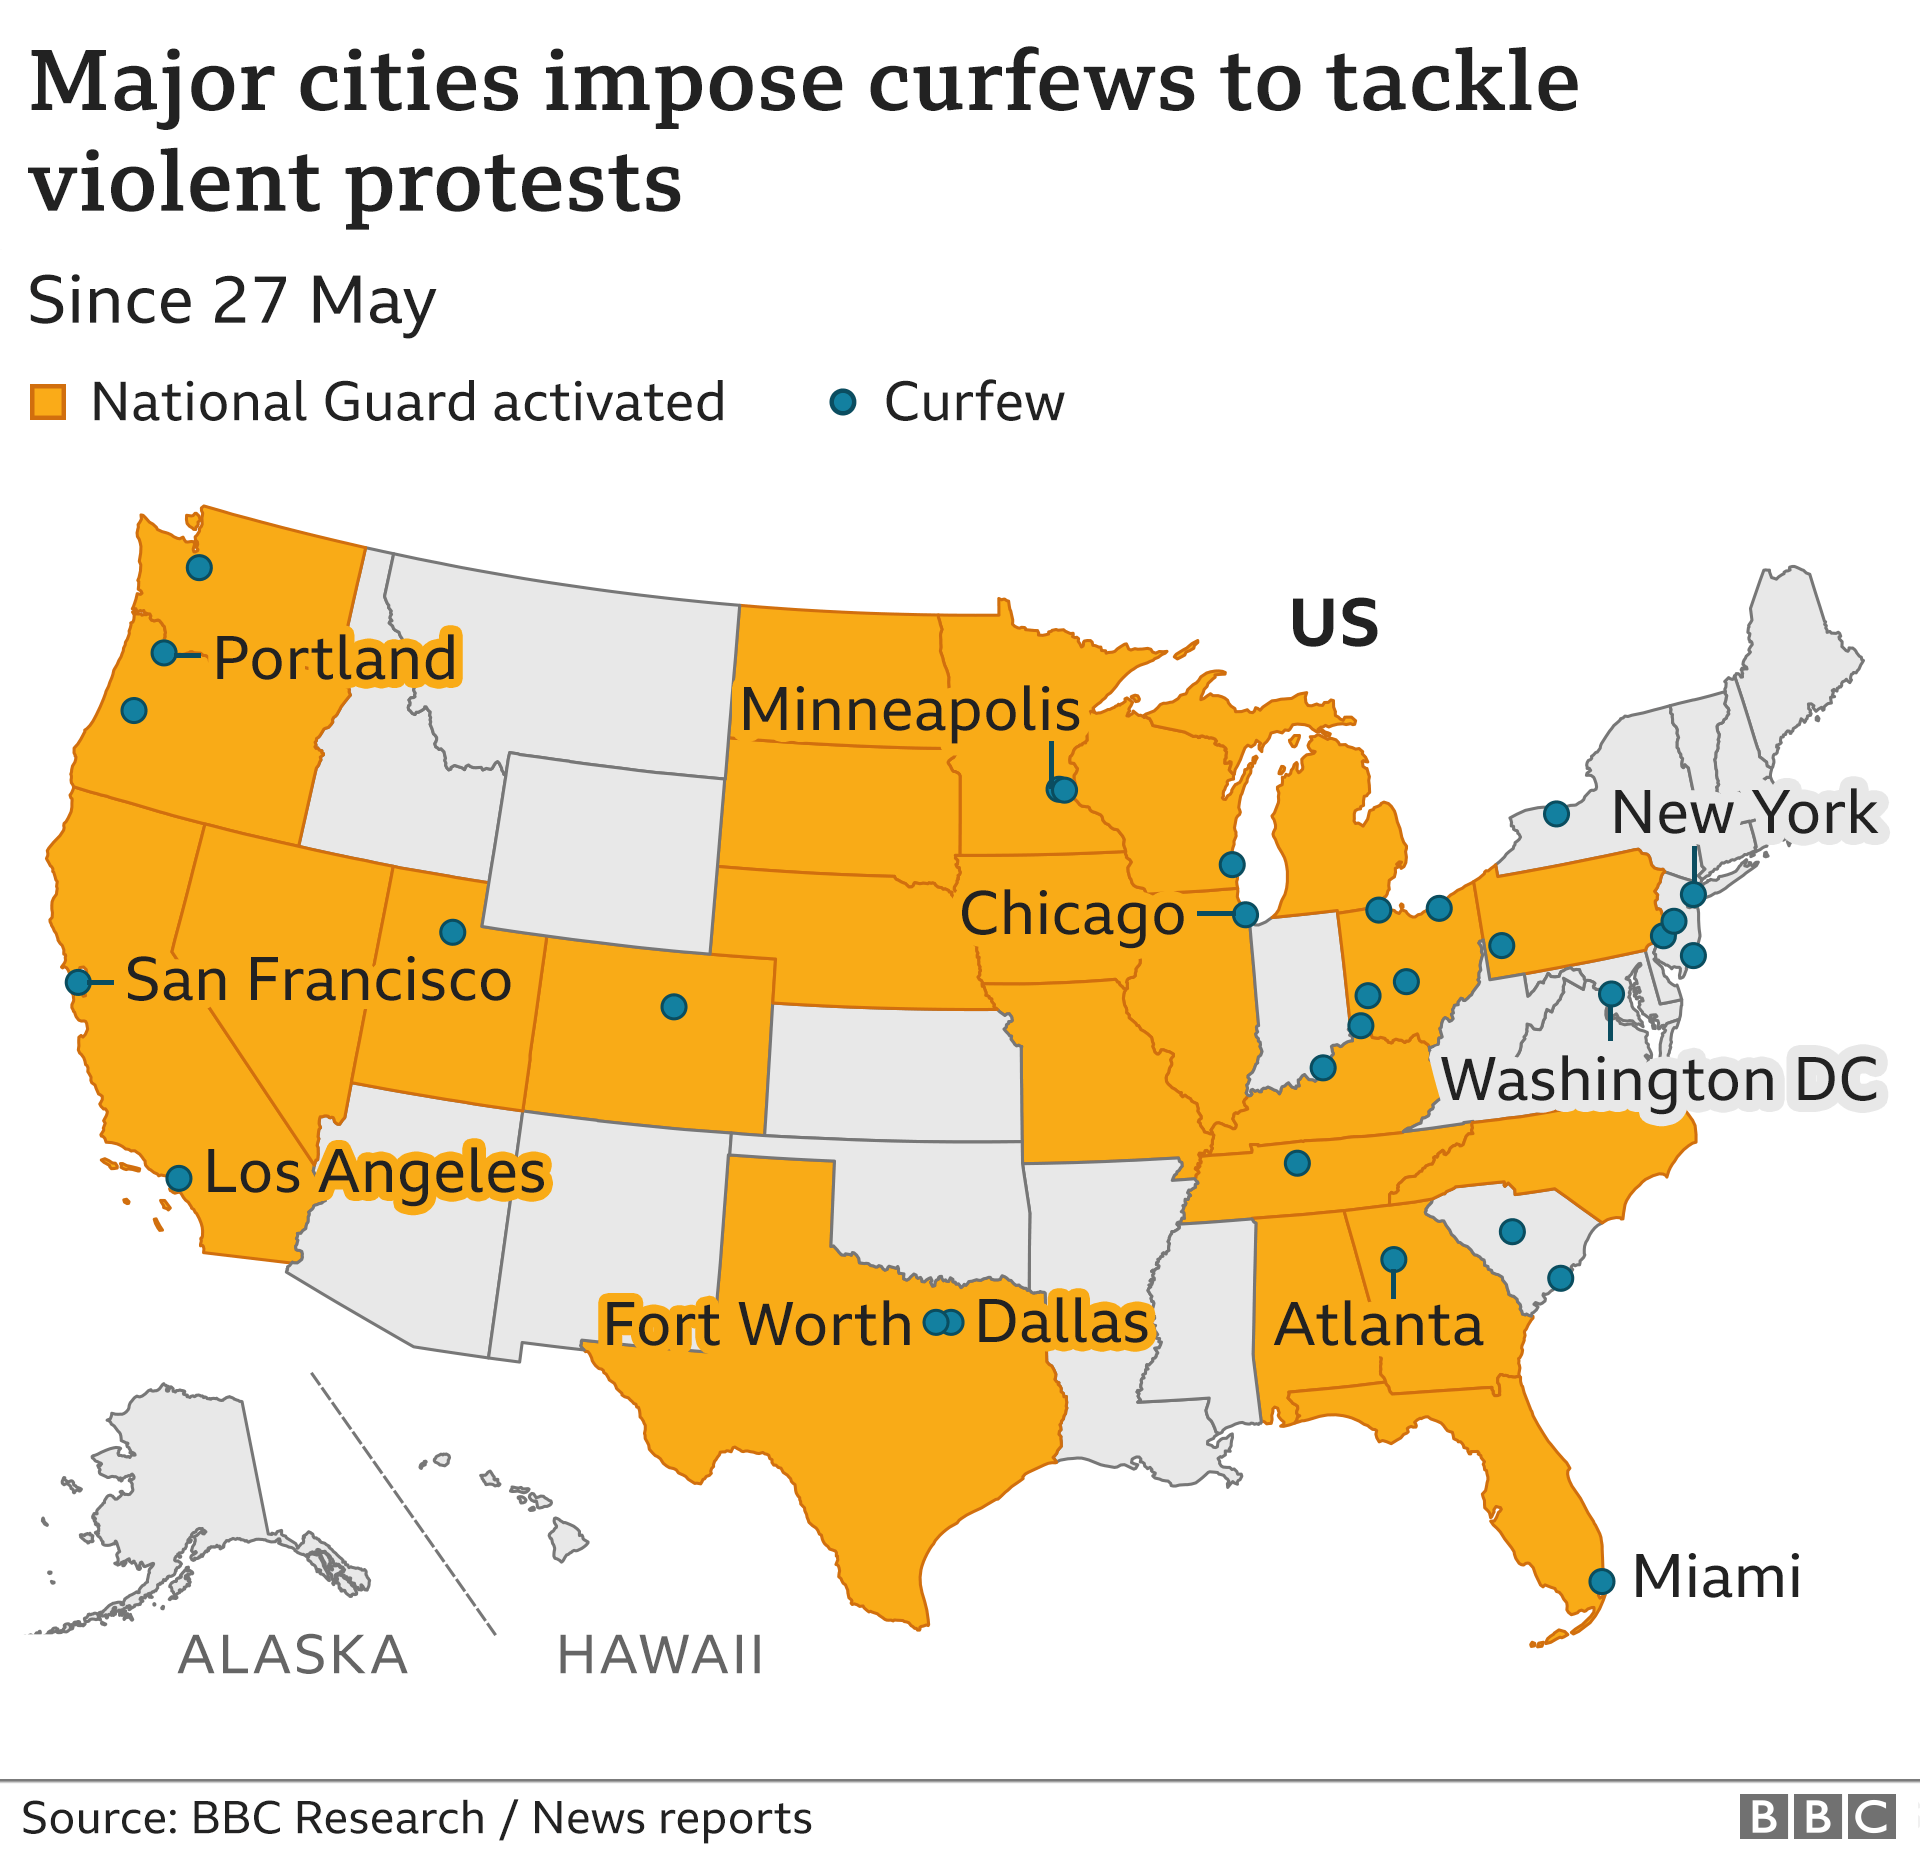 Карта крупных городов, в которых введен комендантский час в связи с распространением беспорядков по США